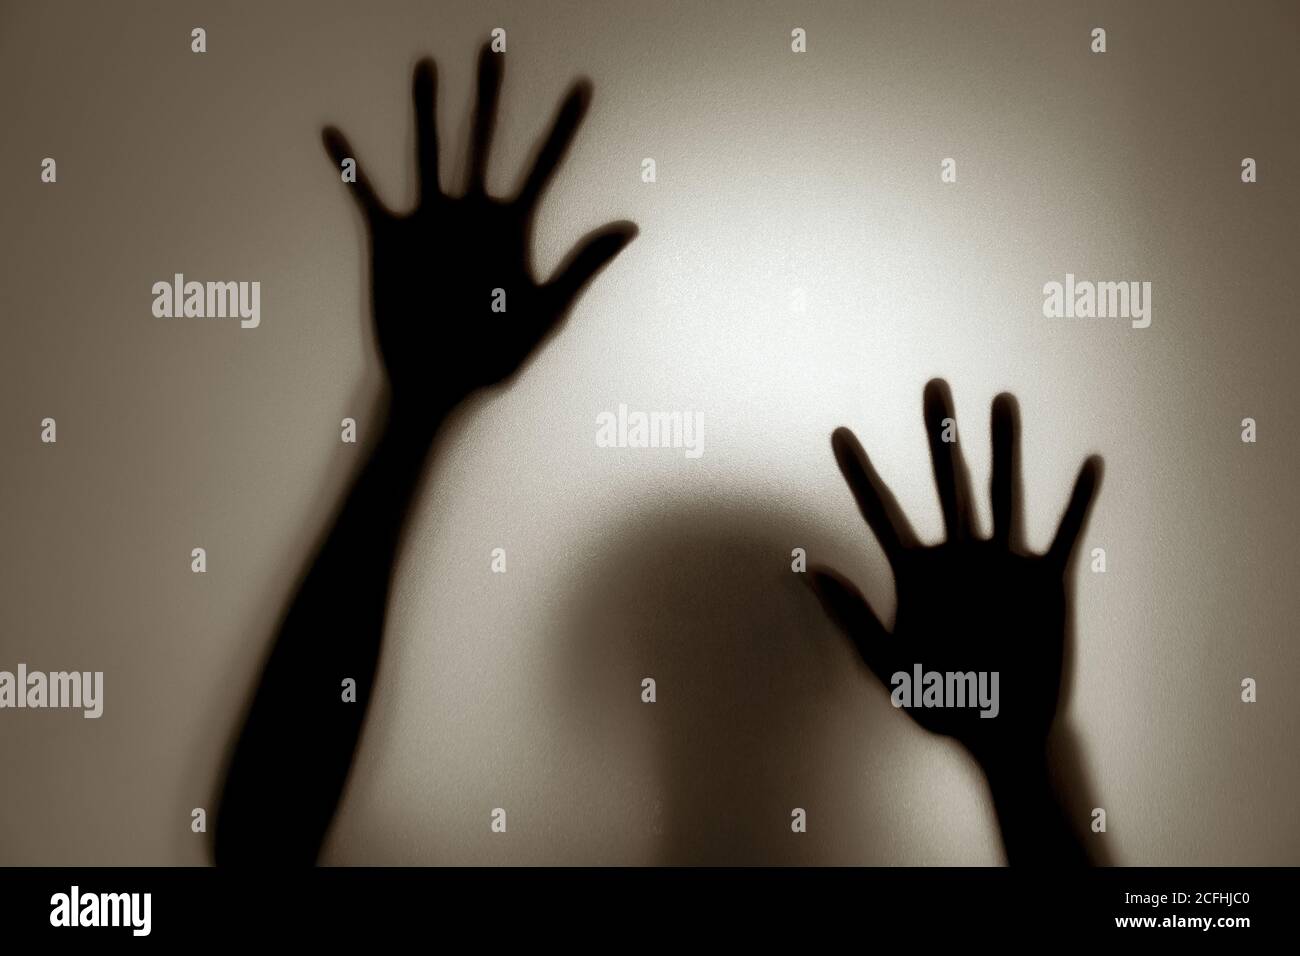 Fantôme concept ombre d'une femme derrière le verre mat mise au point flou pour les mains et le corps Banque D'Images